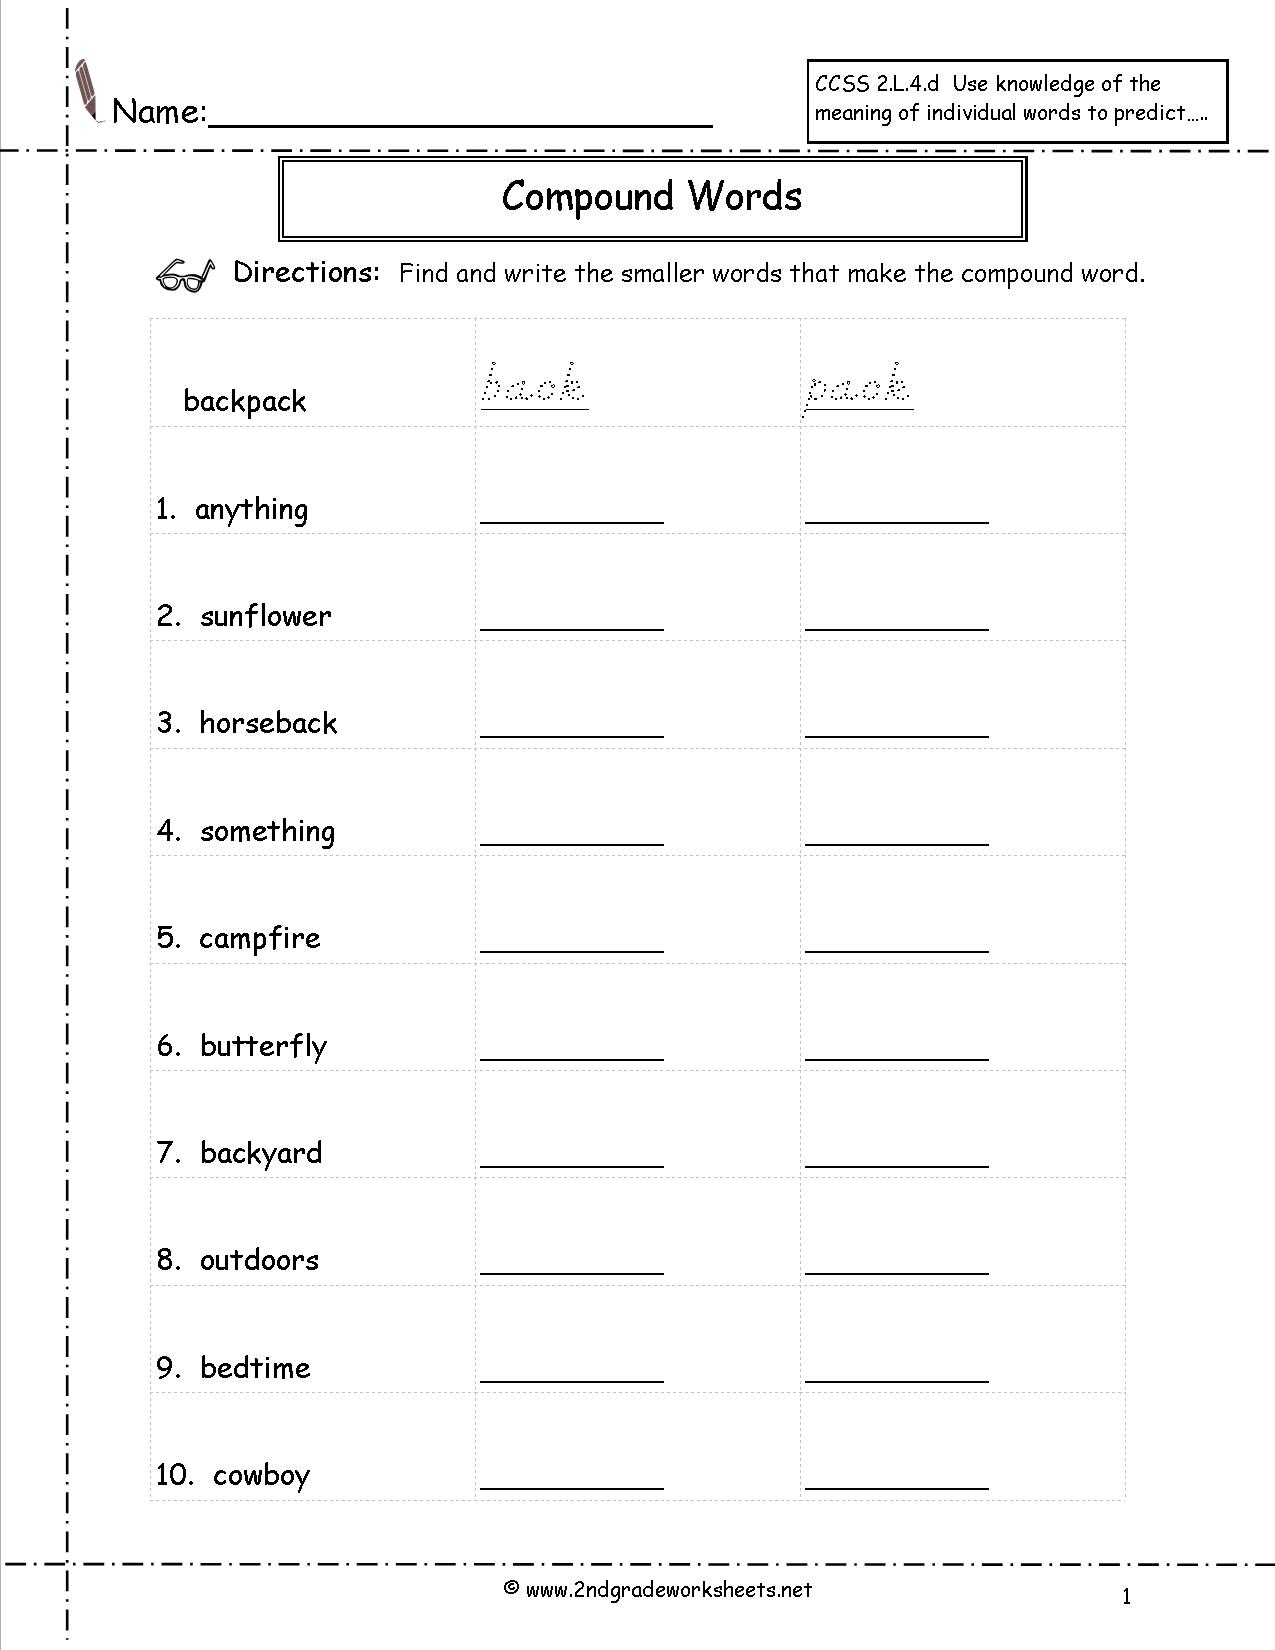 13-compound-words-worksheets-worksheeto